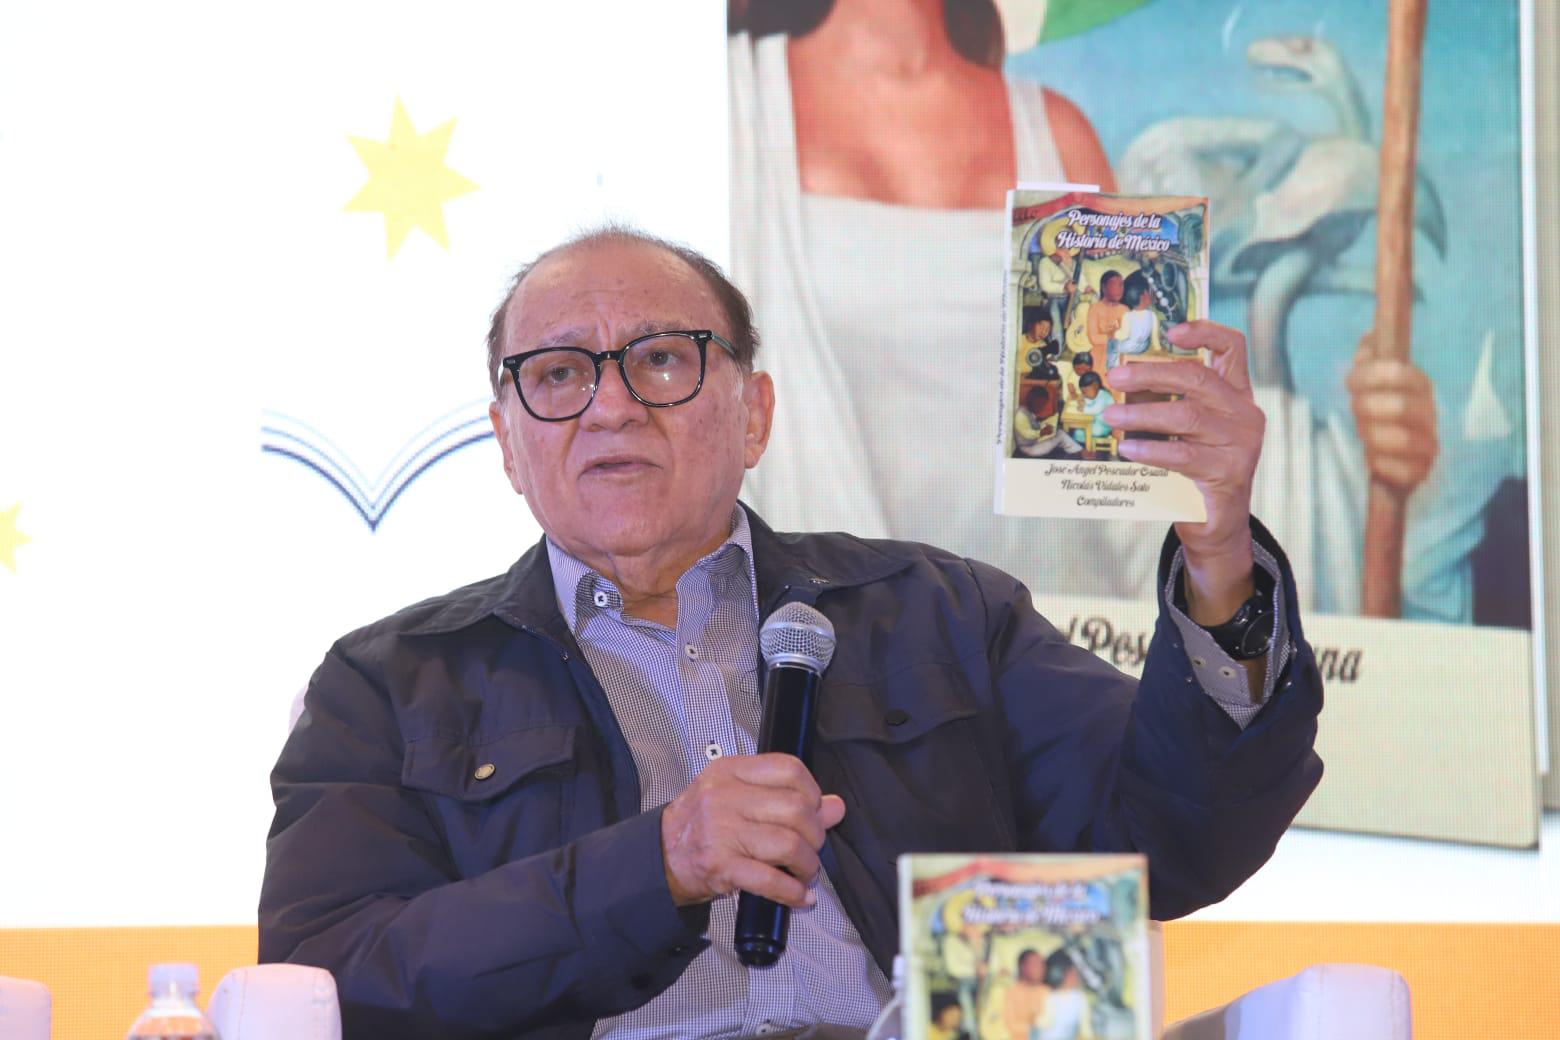 $!Presenta José Ángel Pescador libro homenaje a figuras históricas de México, en la FeliUAS